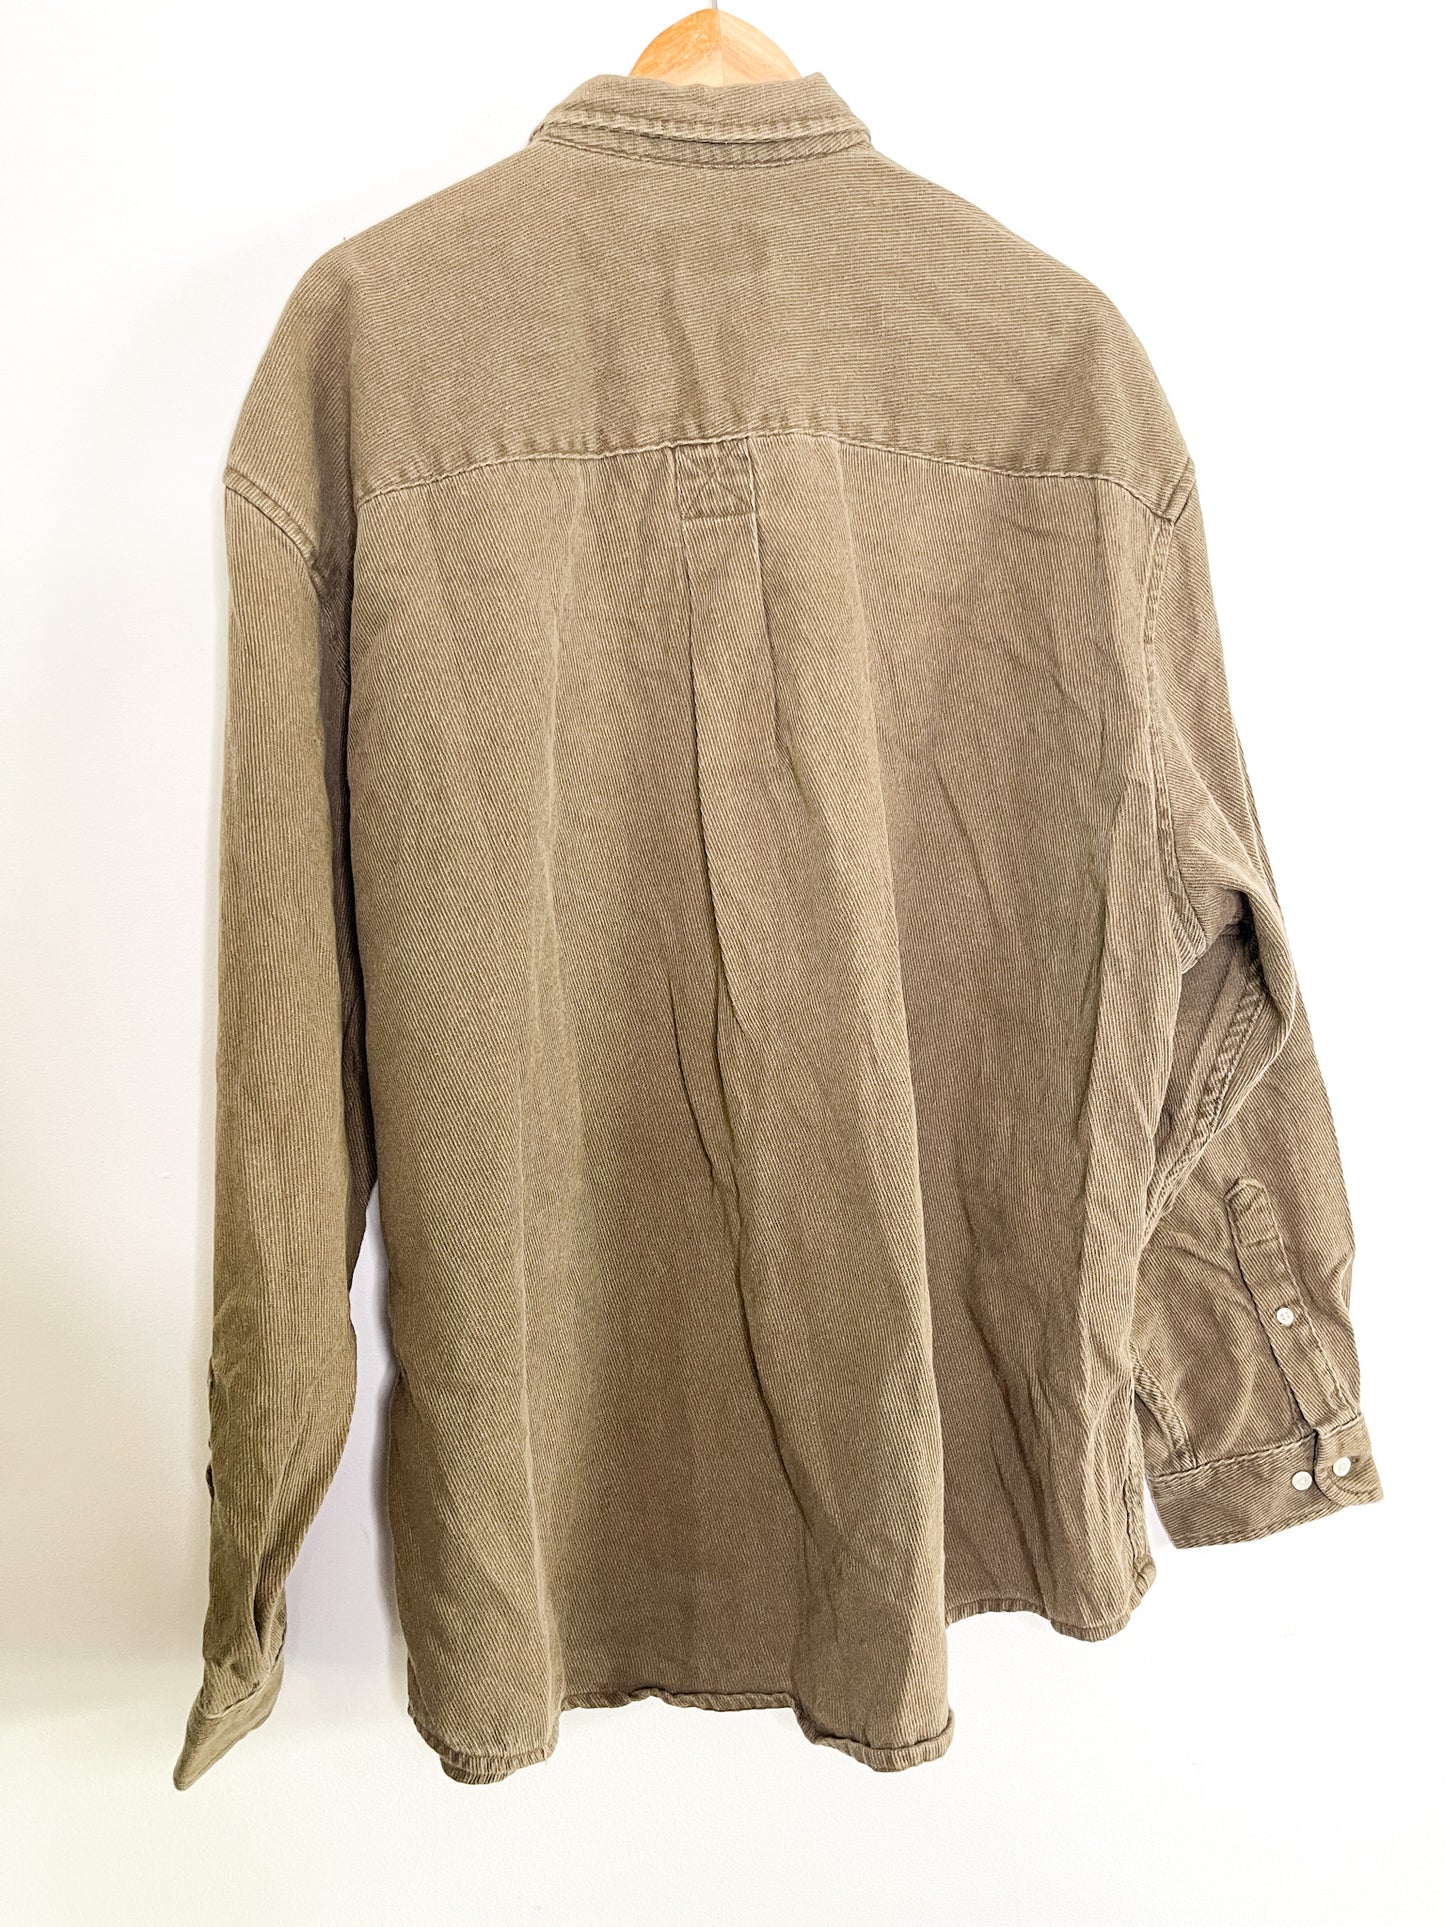 Eddie Bauer Brown Long Sleeved Corduroy Shirt | Vintage 2XL Brown Long Sleeved Corduroy shirt